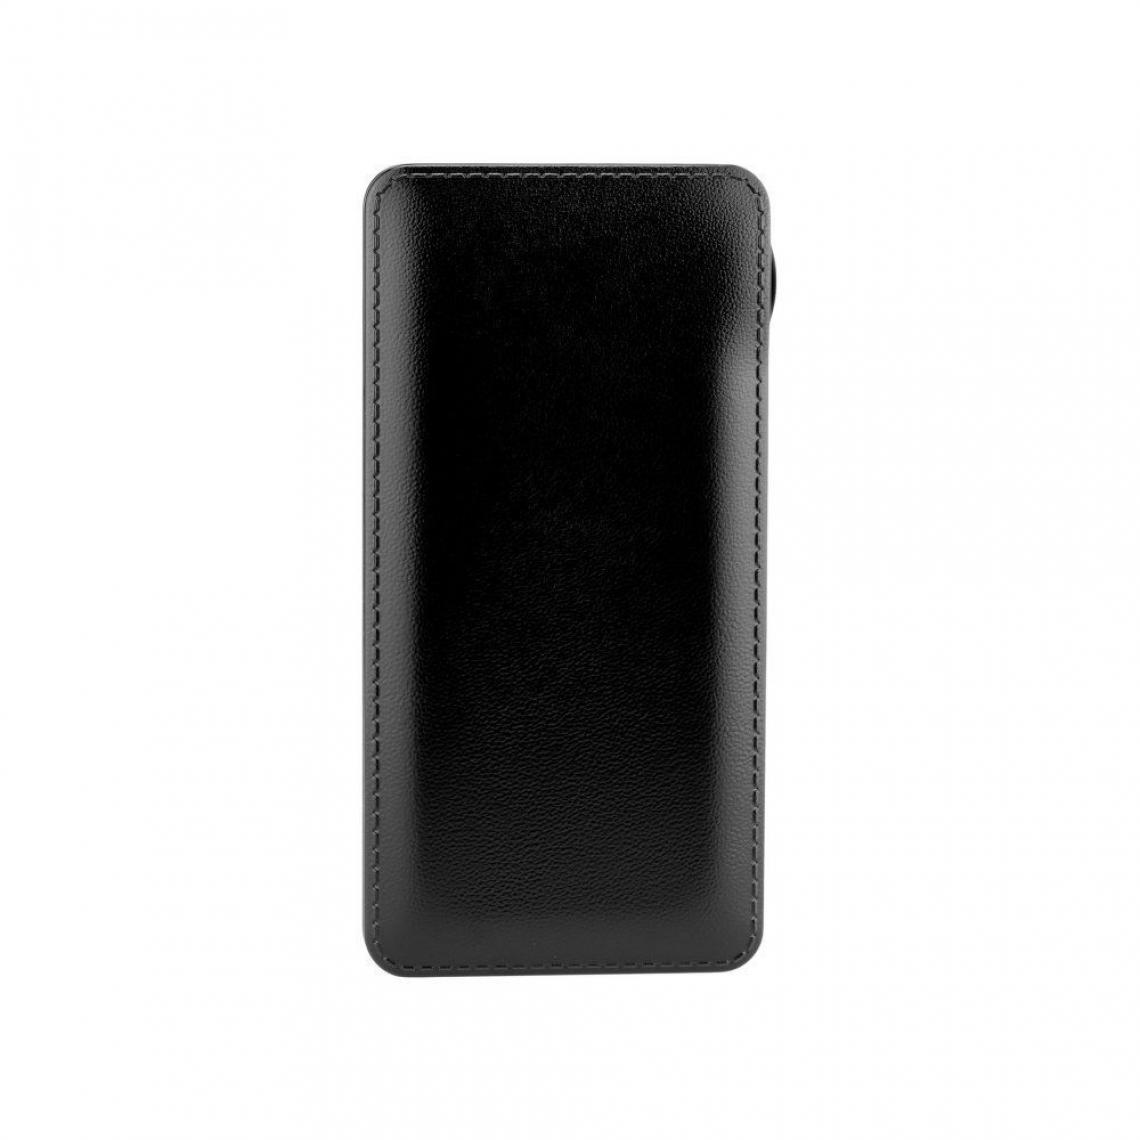 Ozzzo - Chargeur batterie externe 30000 mAh powerbank ozzzo noir pour Lenovo Tab 2 A7-30 - Autres accessoires smartphone